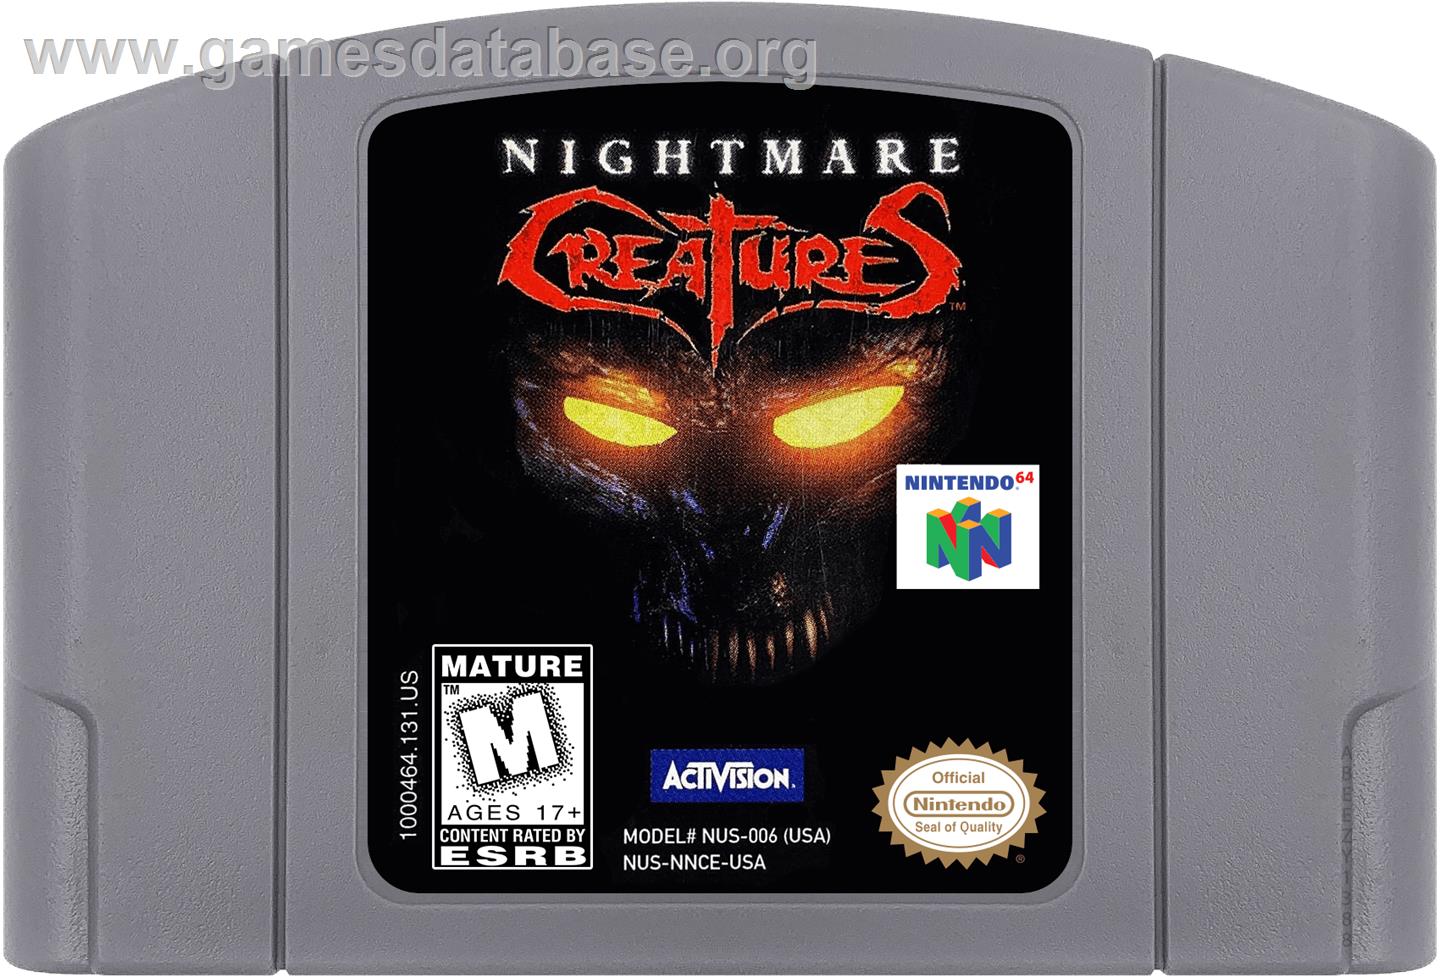 Nightmare Creatures - Nintendo N64 - Artwork - Cartridge